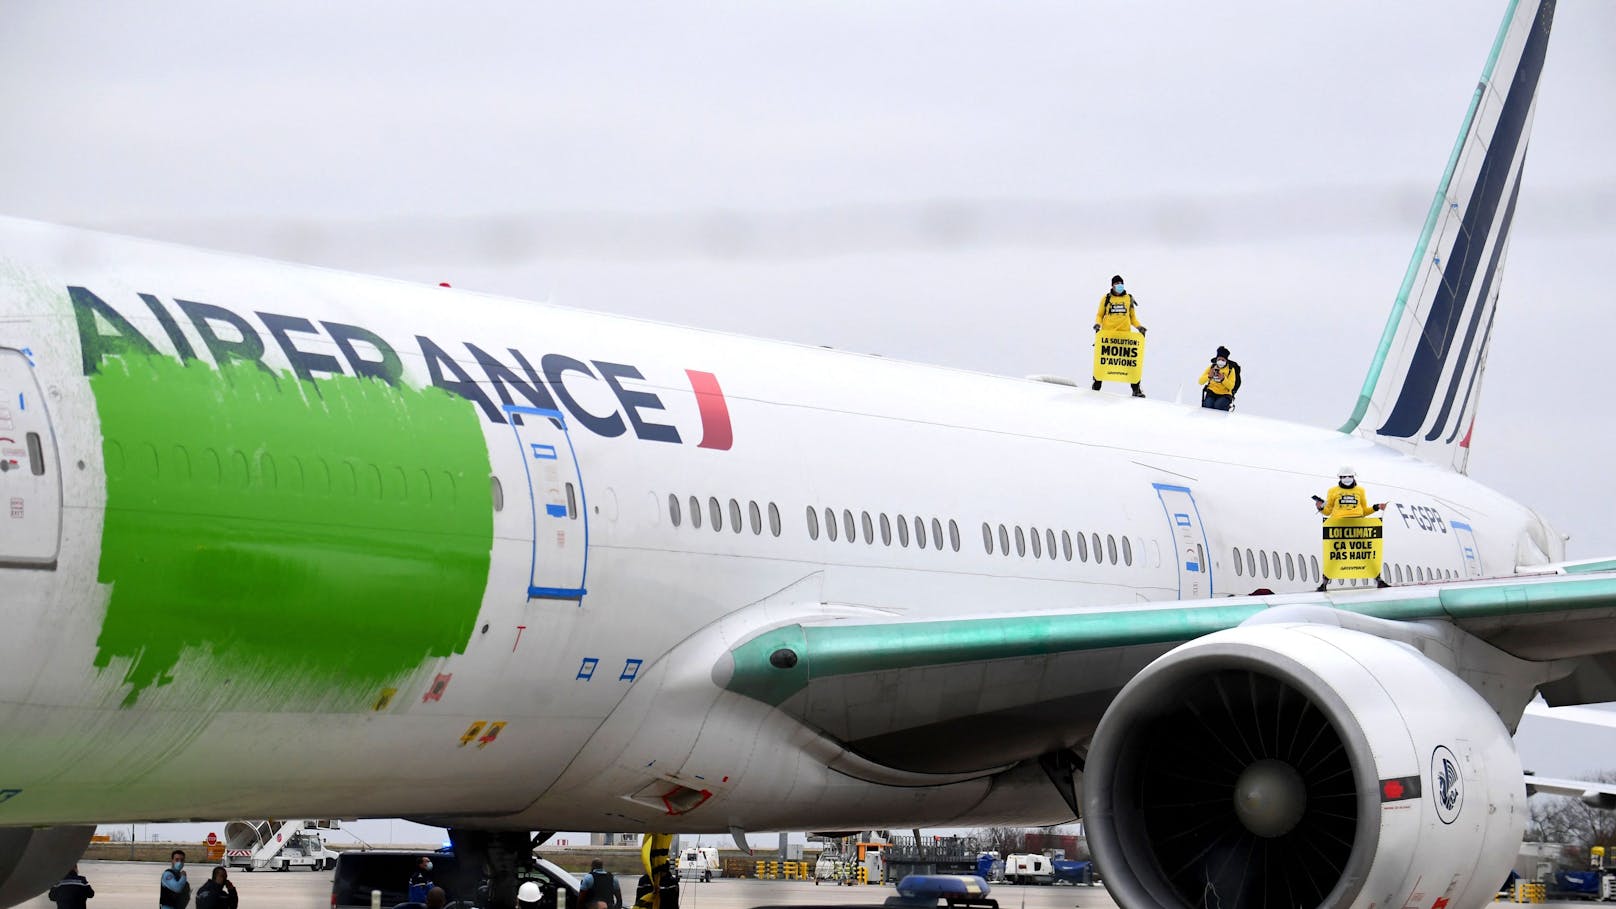 Greenpeace-Aktivisten am Flughafen Roissy-Charles de Gaulle (CDG), nördlich von Paris, prangern das Greenwashing im Flugverkehr an.